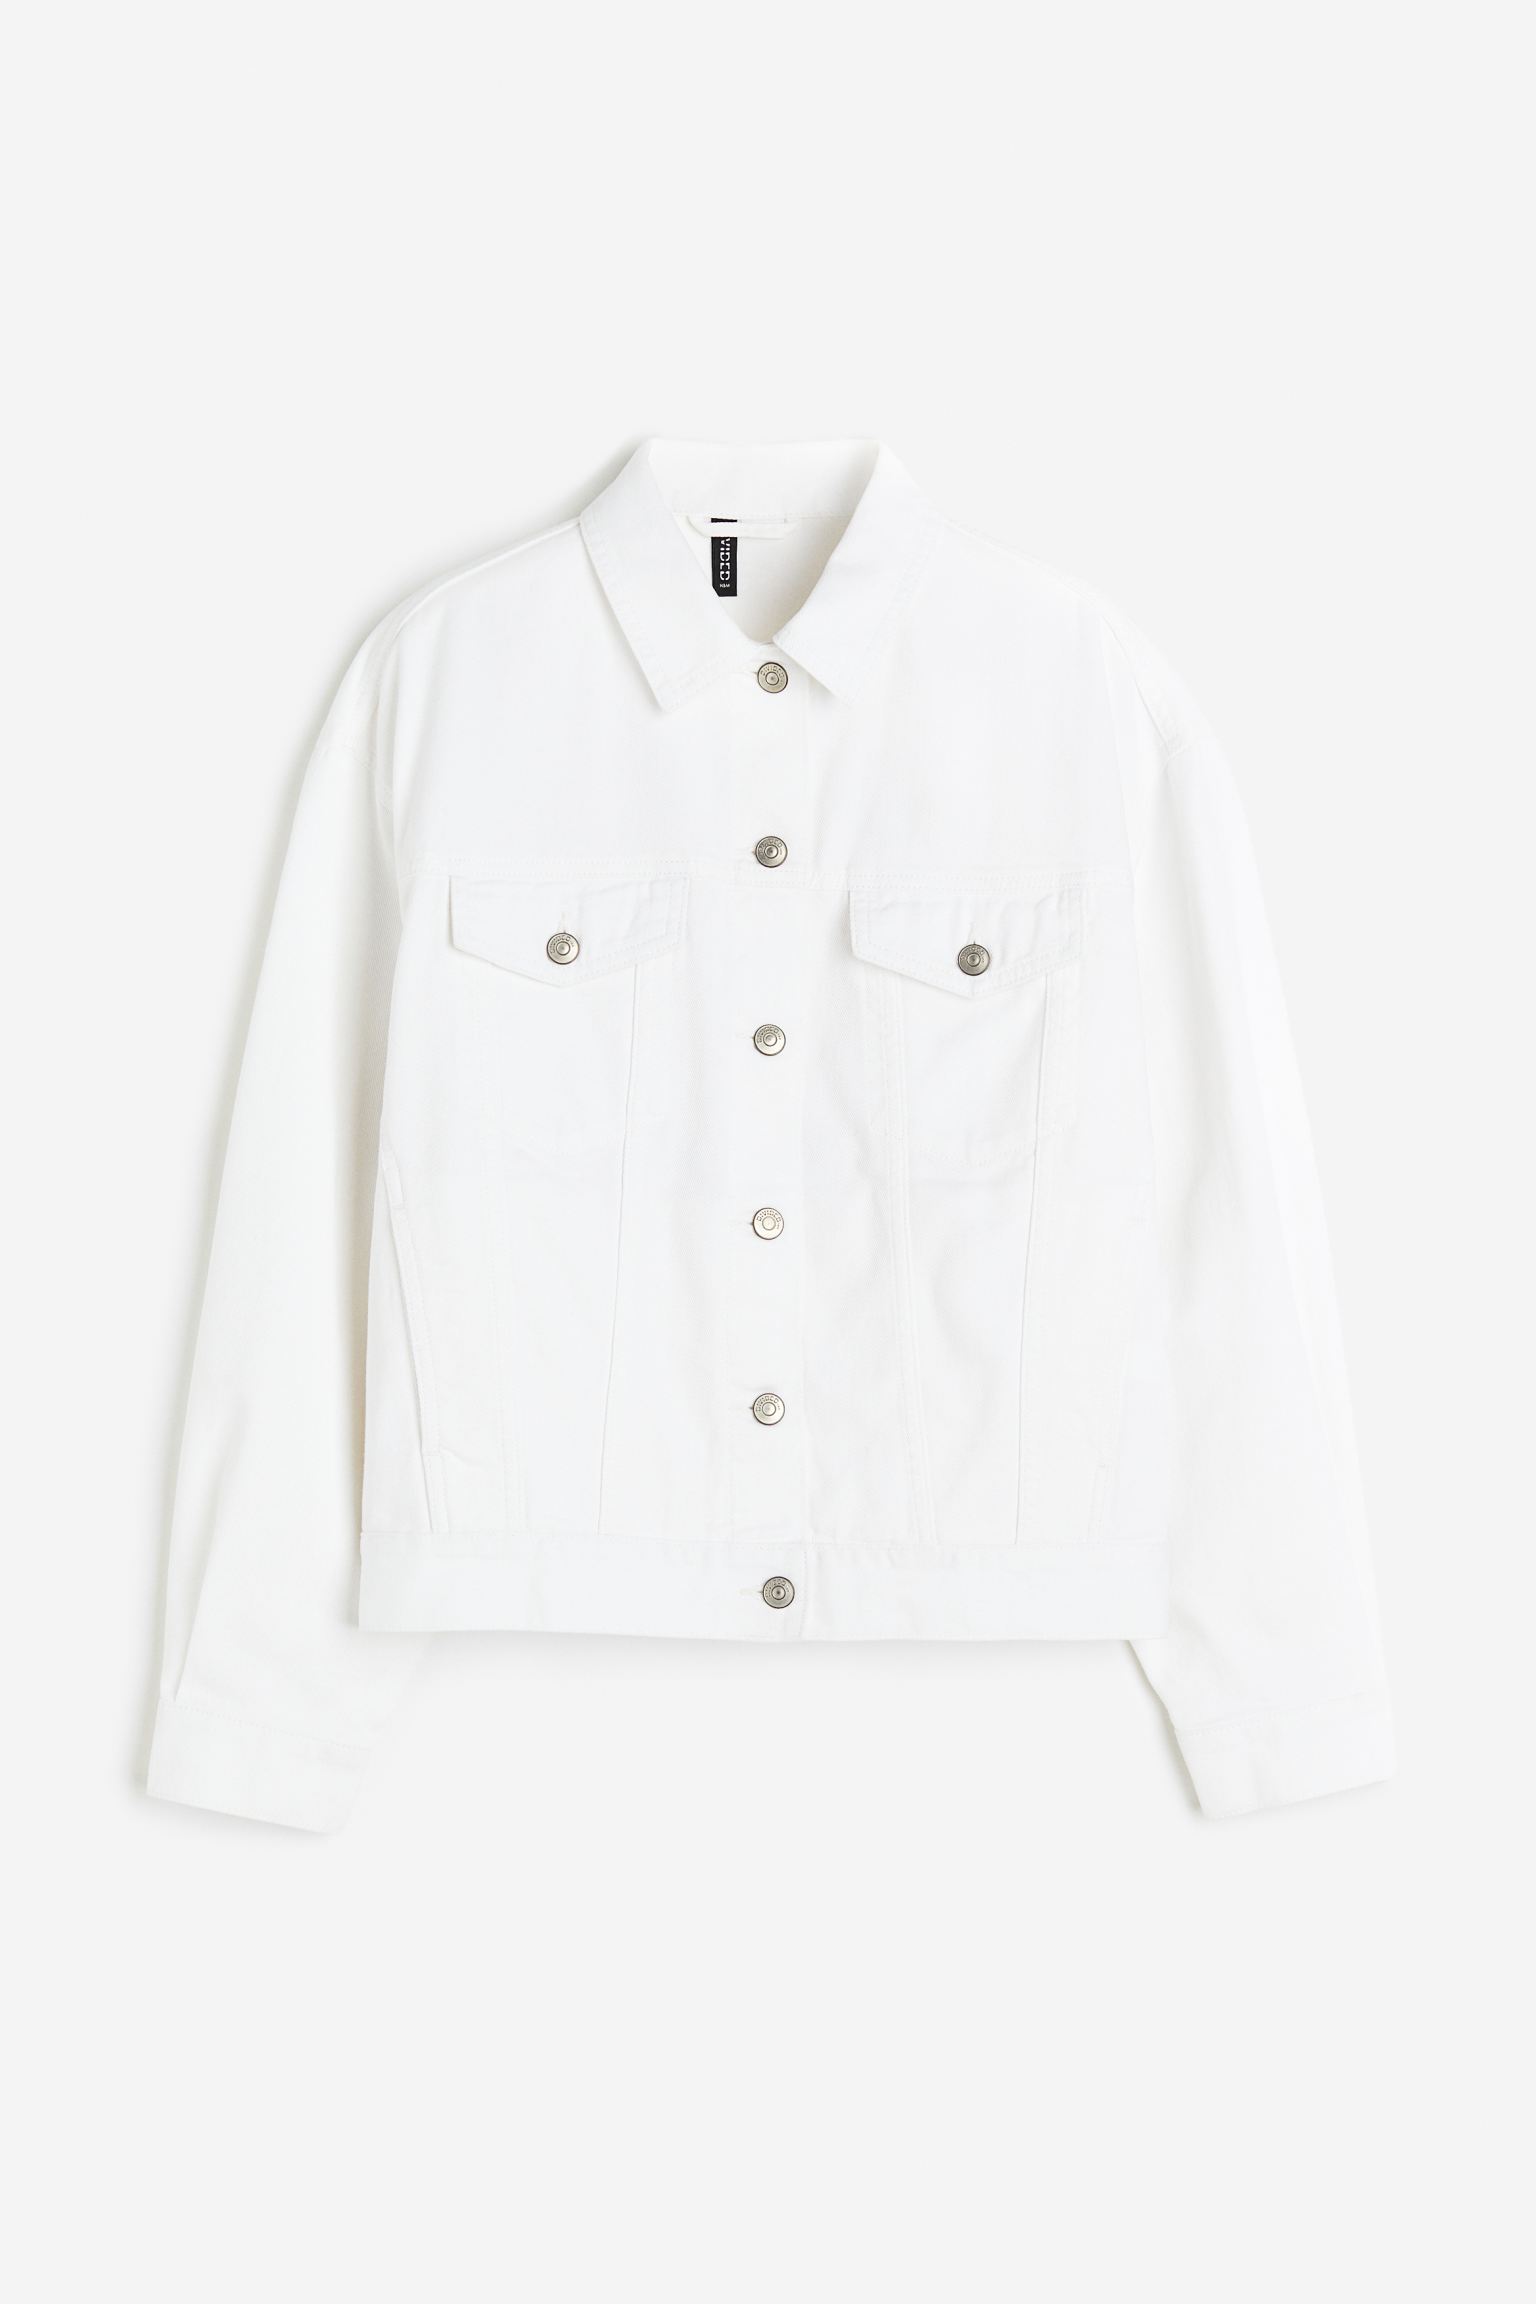 Джинсовая куртка женская H&M 1121726005 белая XL (доставка из-за рубежа)